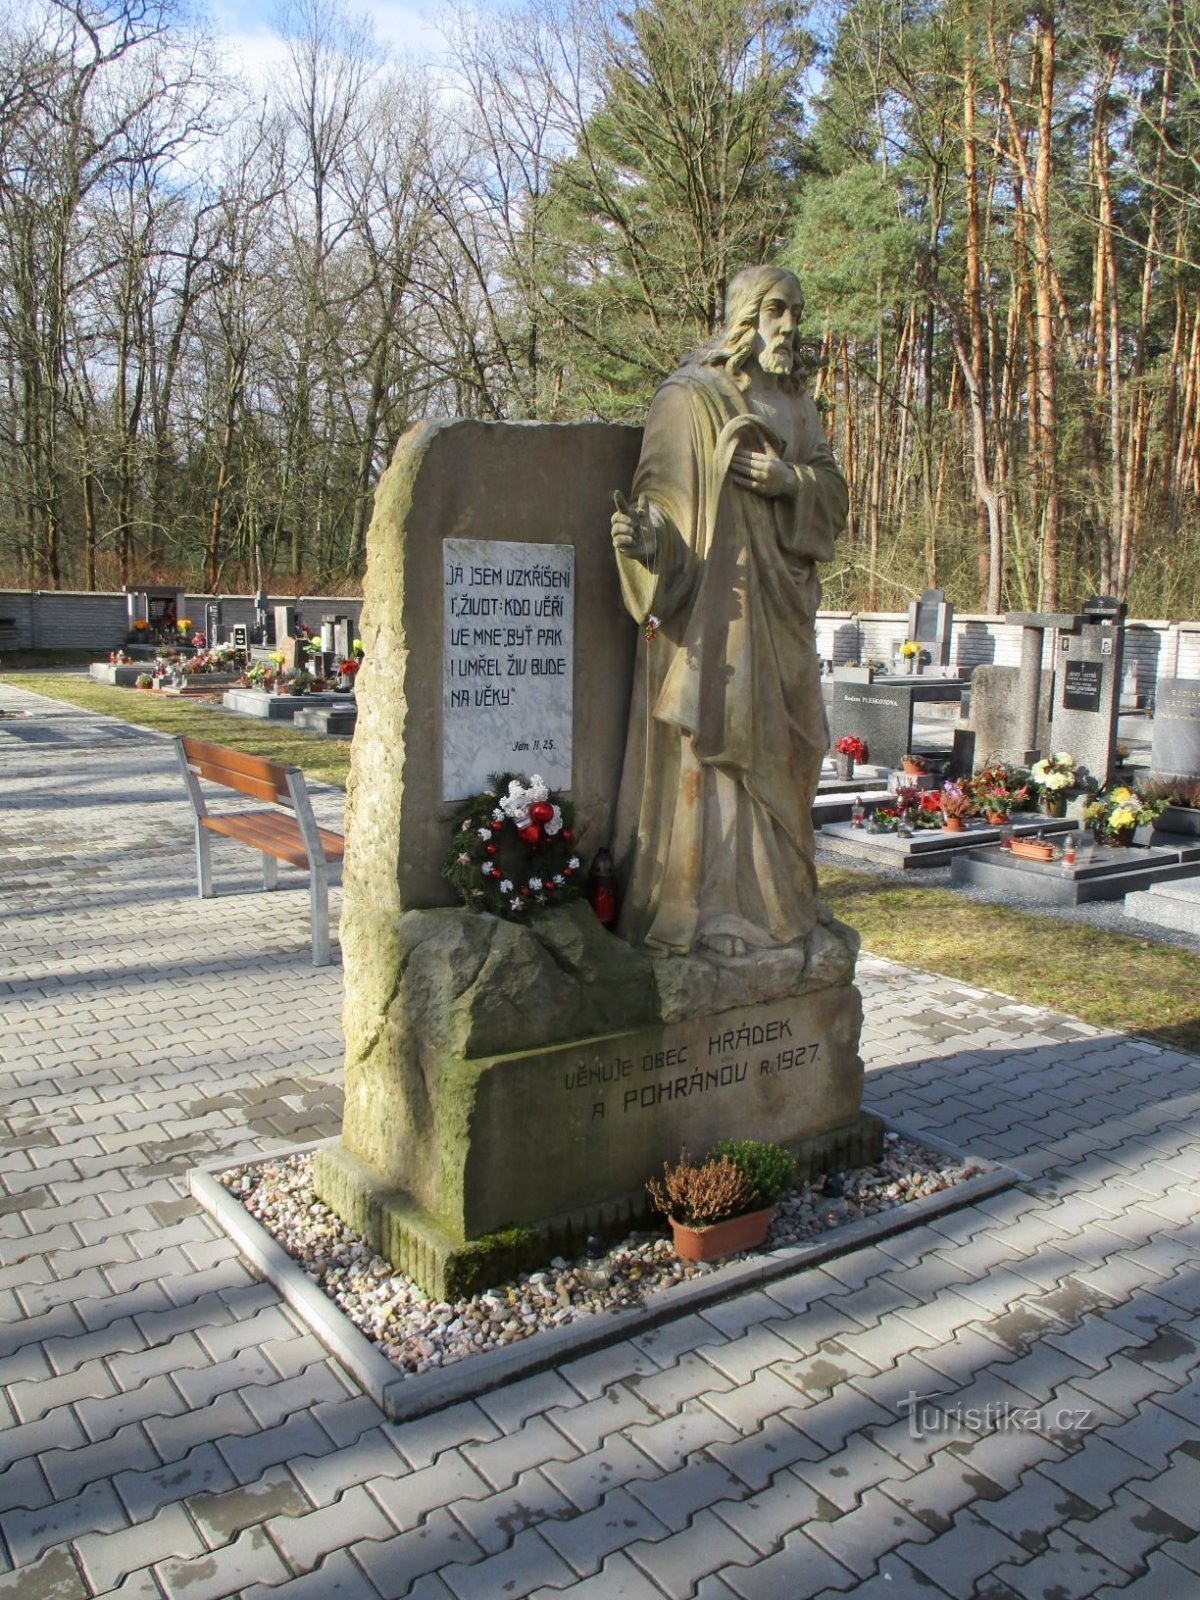 Statua di Gesù Cristo nel cimitero (Hrádek, 20.2.2020/XNUMX/XNUMX)